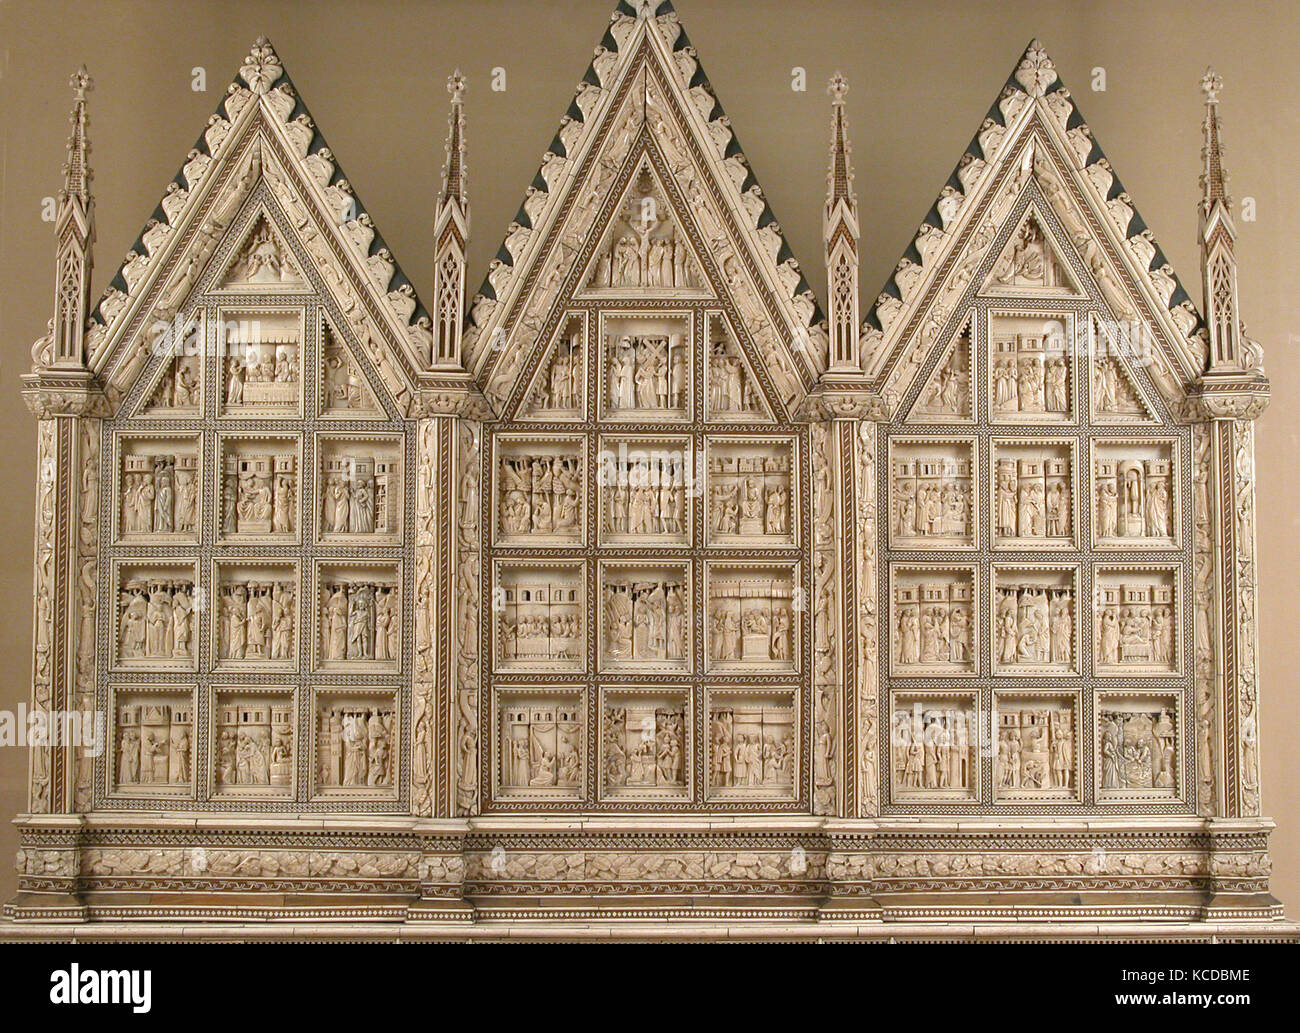 Altarbild, Baldassare degli Embriachi, Ca. 1390 - 1400 Stockfoto